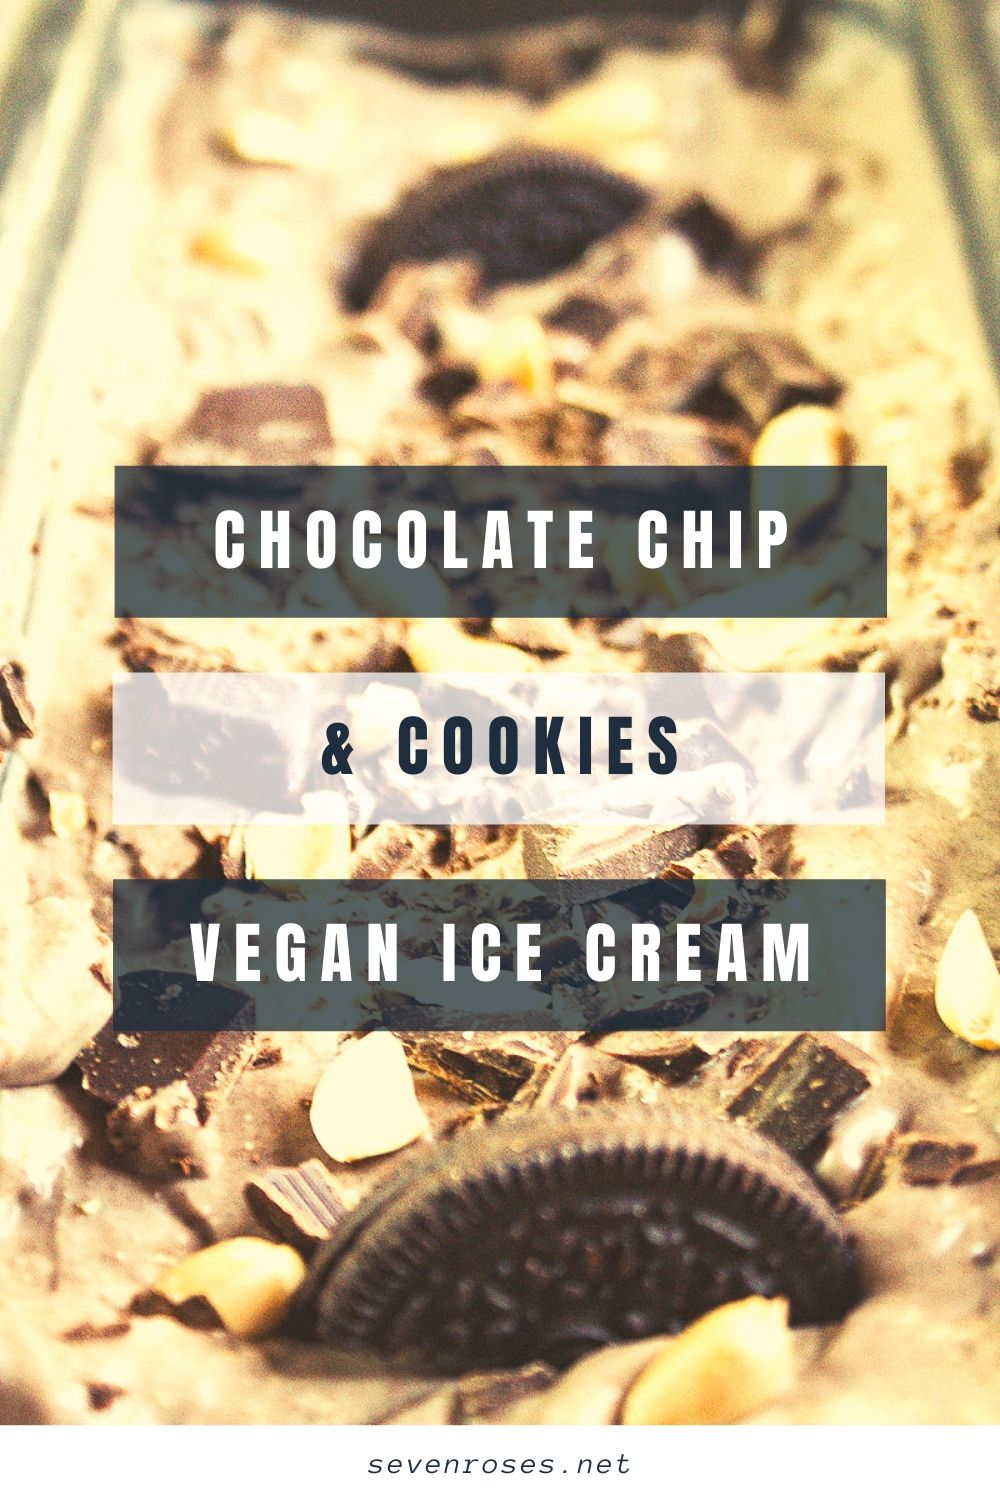 Chocolate chip & cookies Vegan ice cream - dairy-free, no-churn